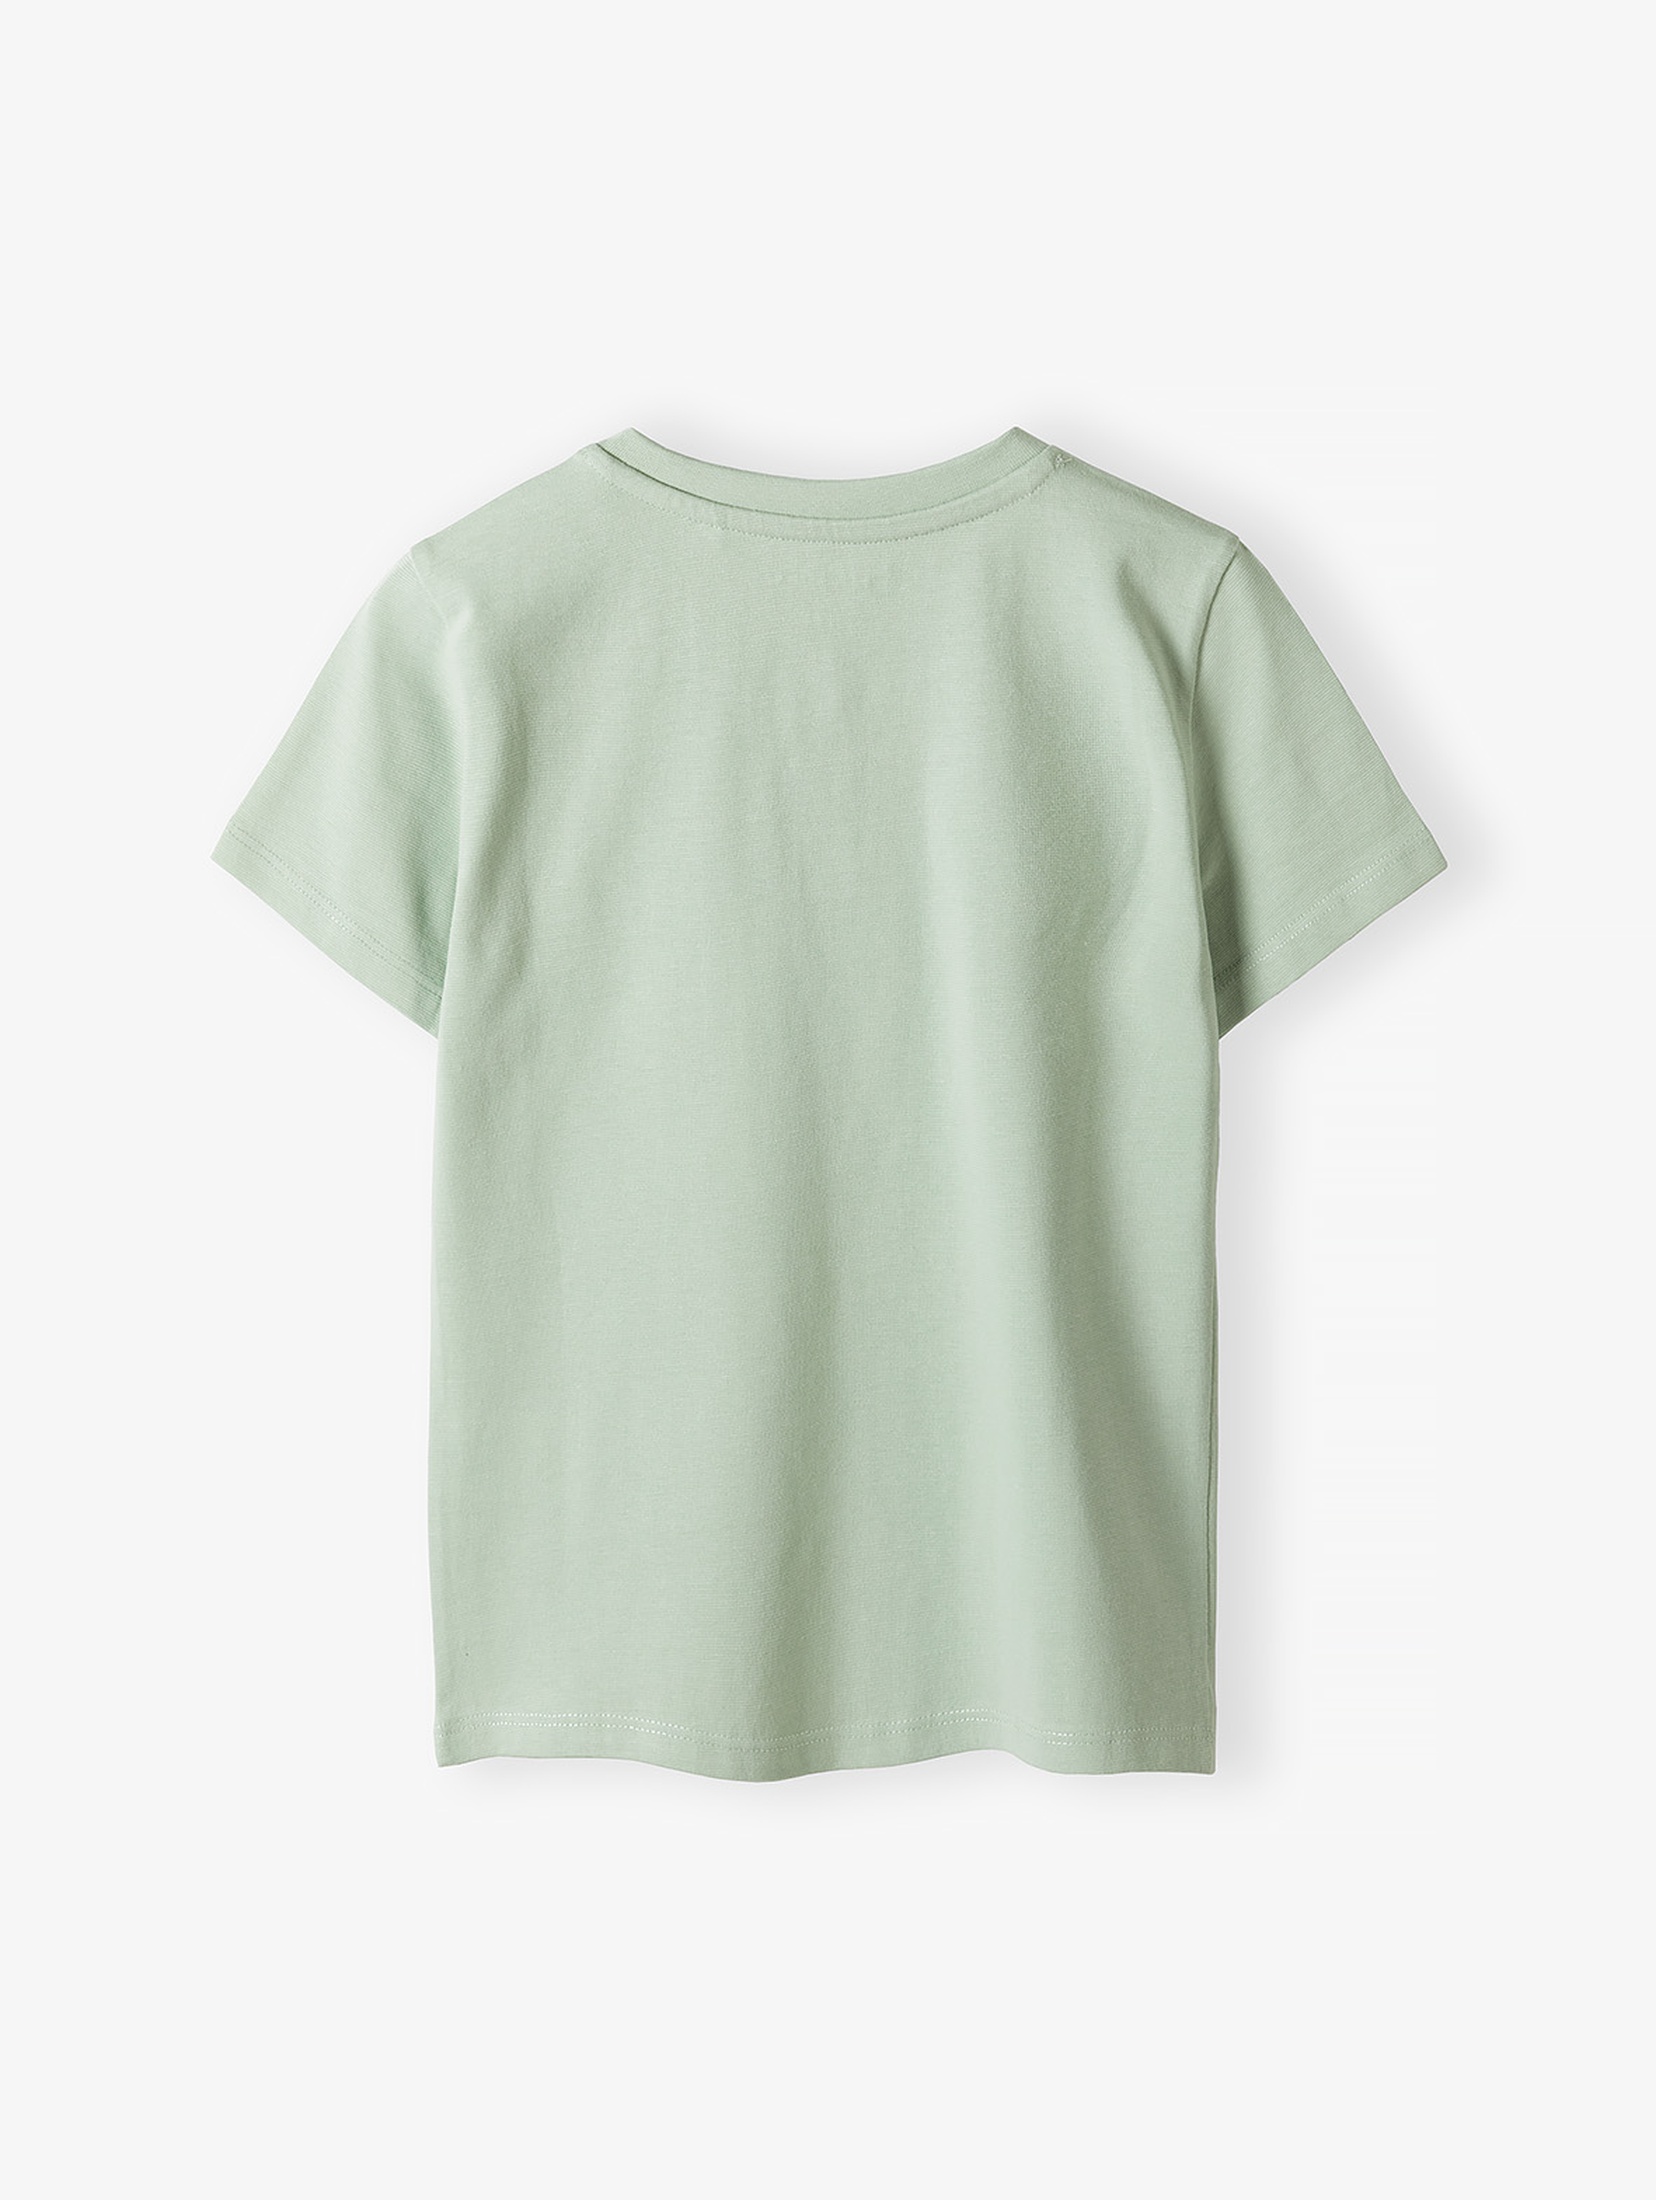 Zielony dzianinowy t-shirt dla chłopca - 100% bawełna - 5.10.15.